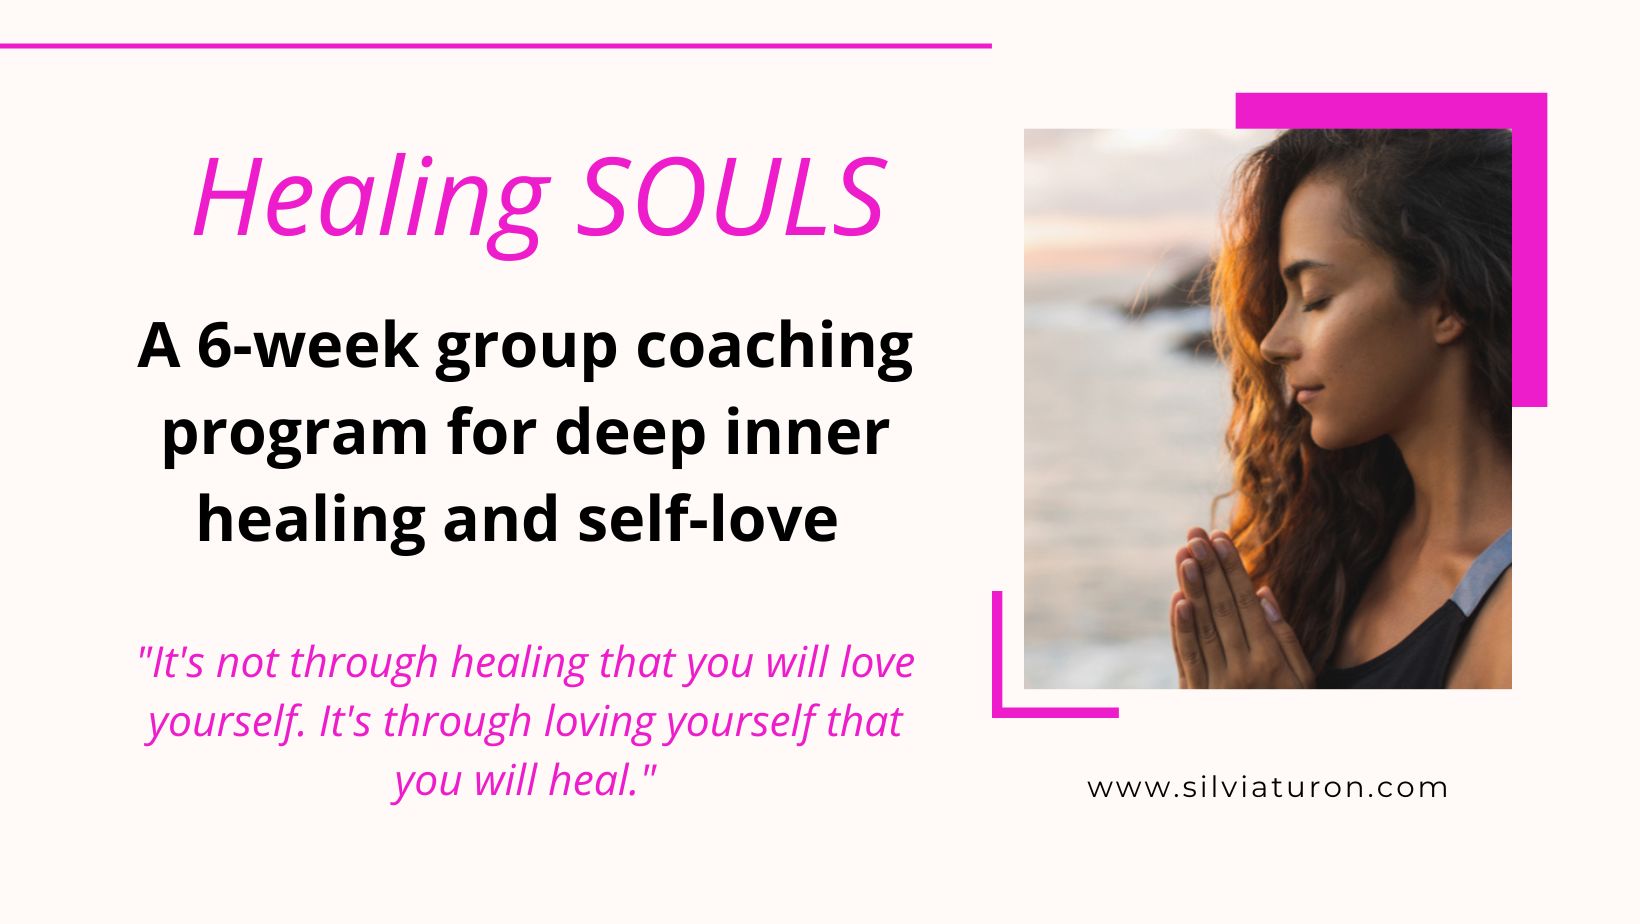 Healing souls coaching program